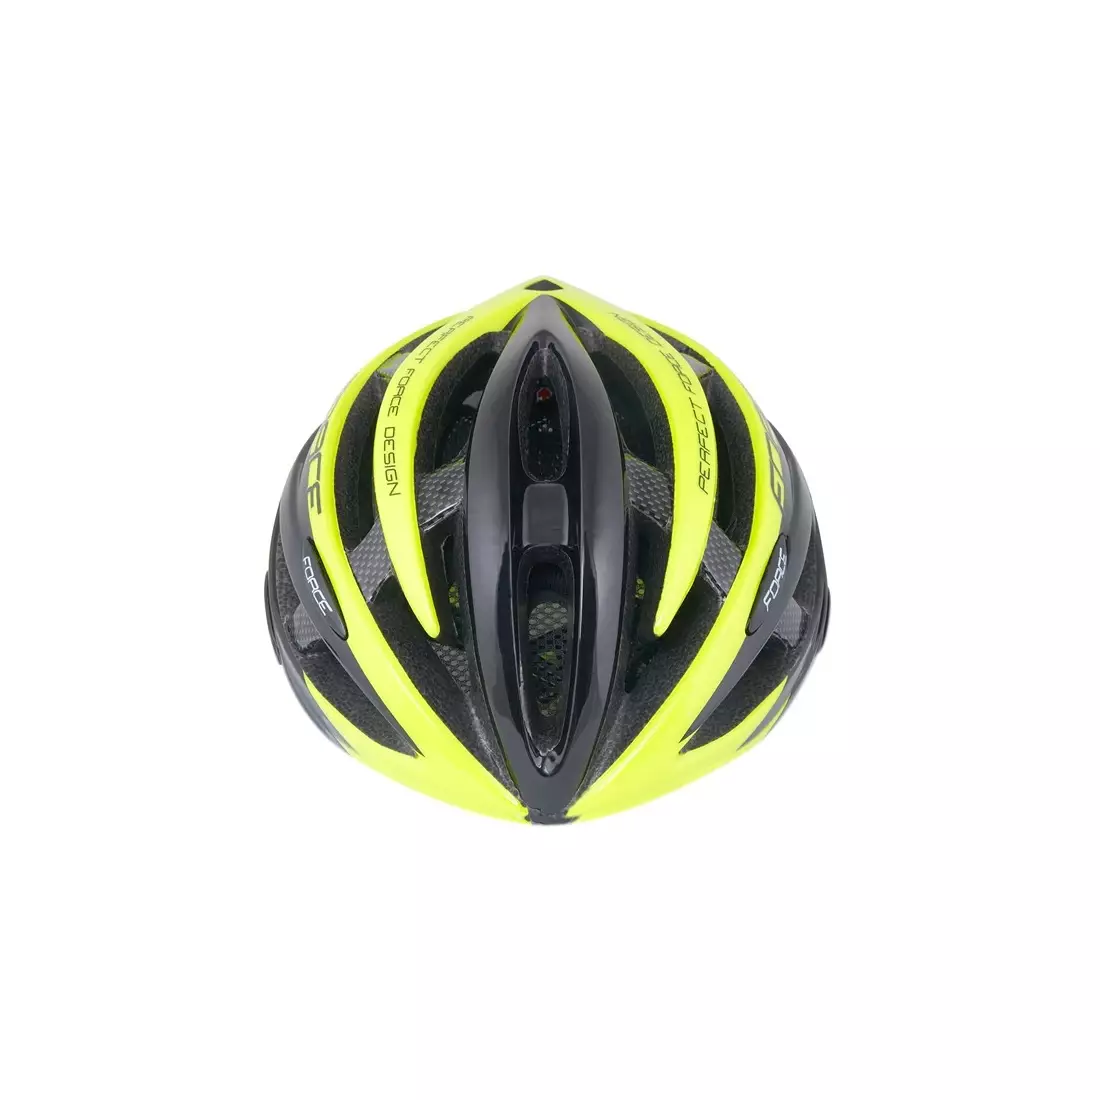 FORCE bicycle helmet, black-fluorine 902604(5)